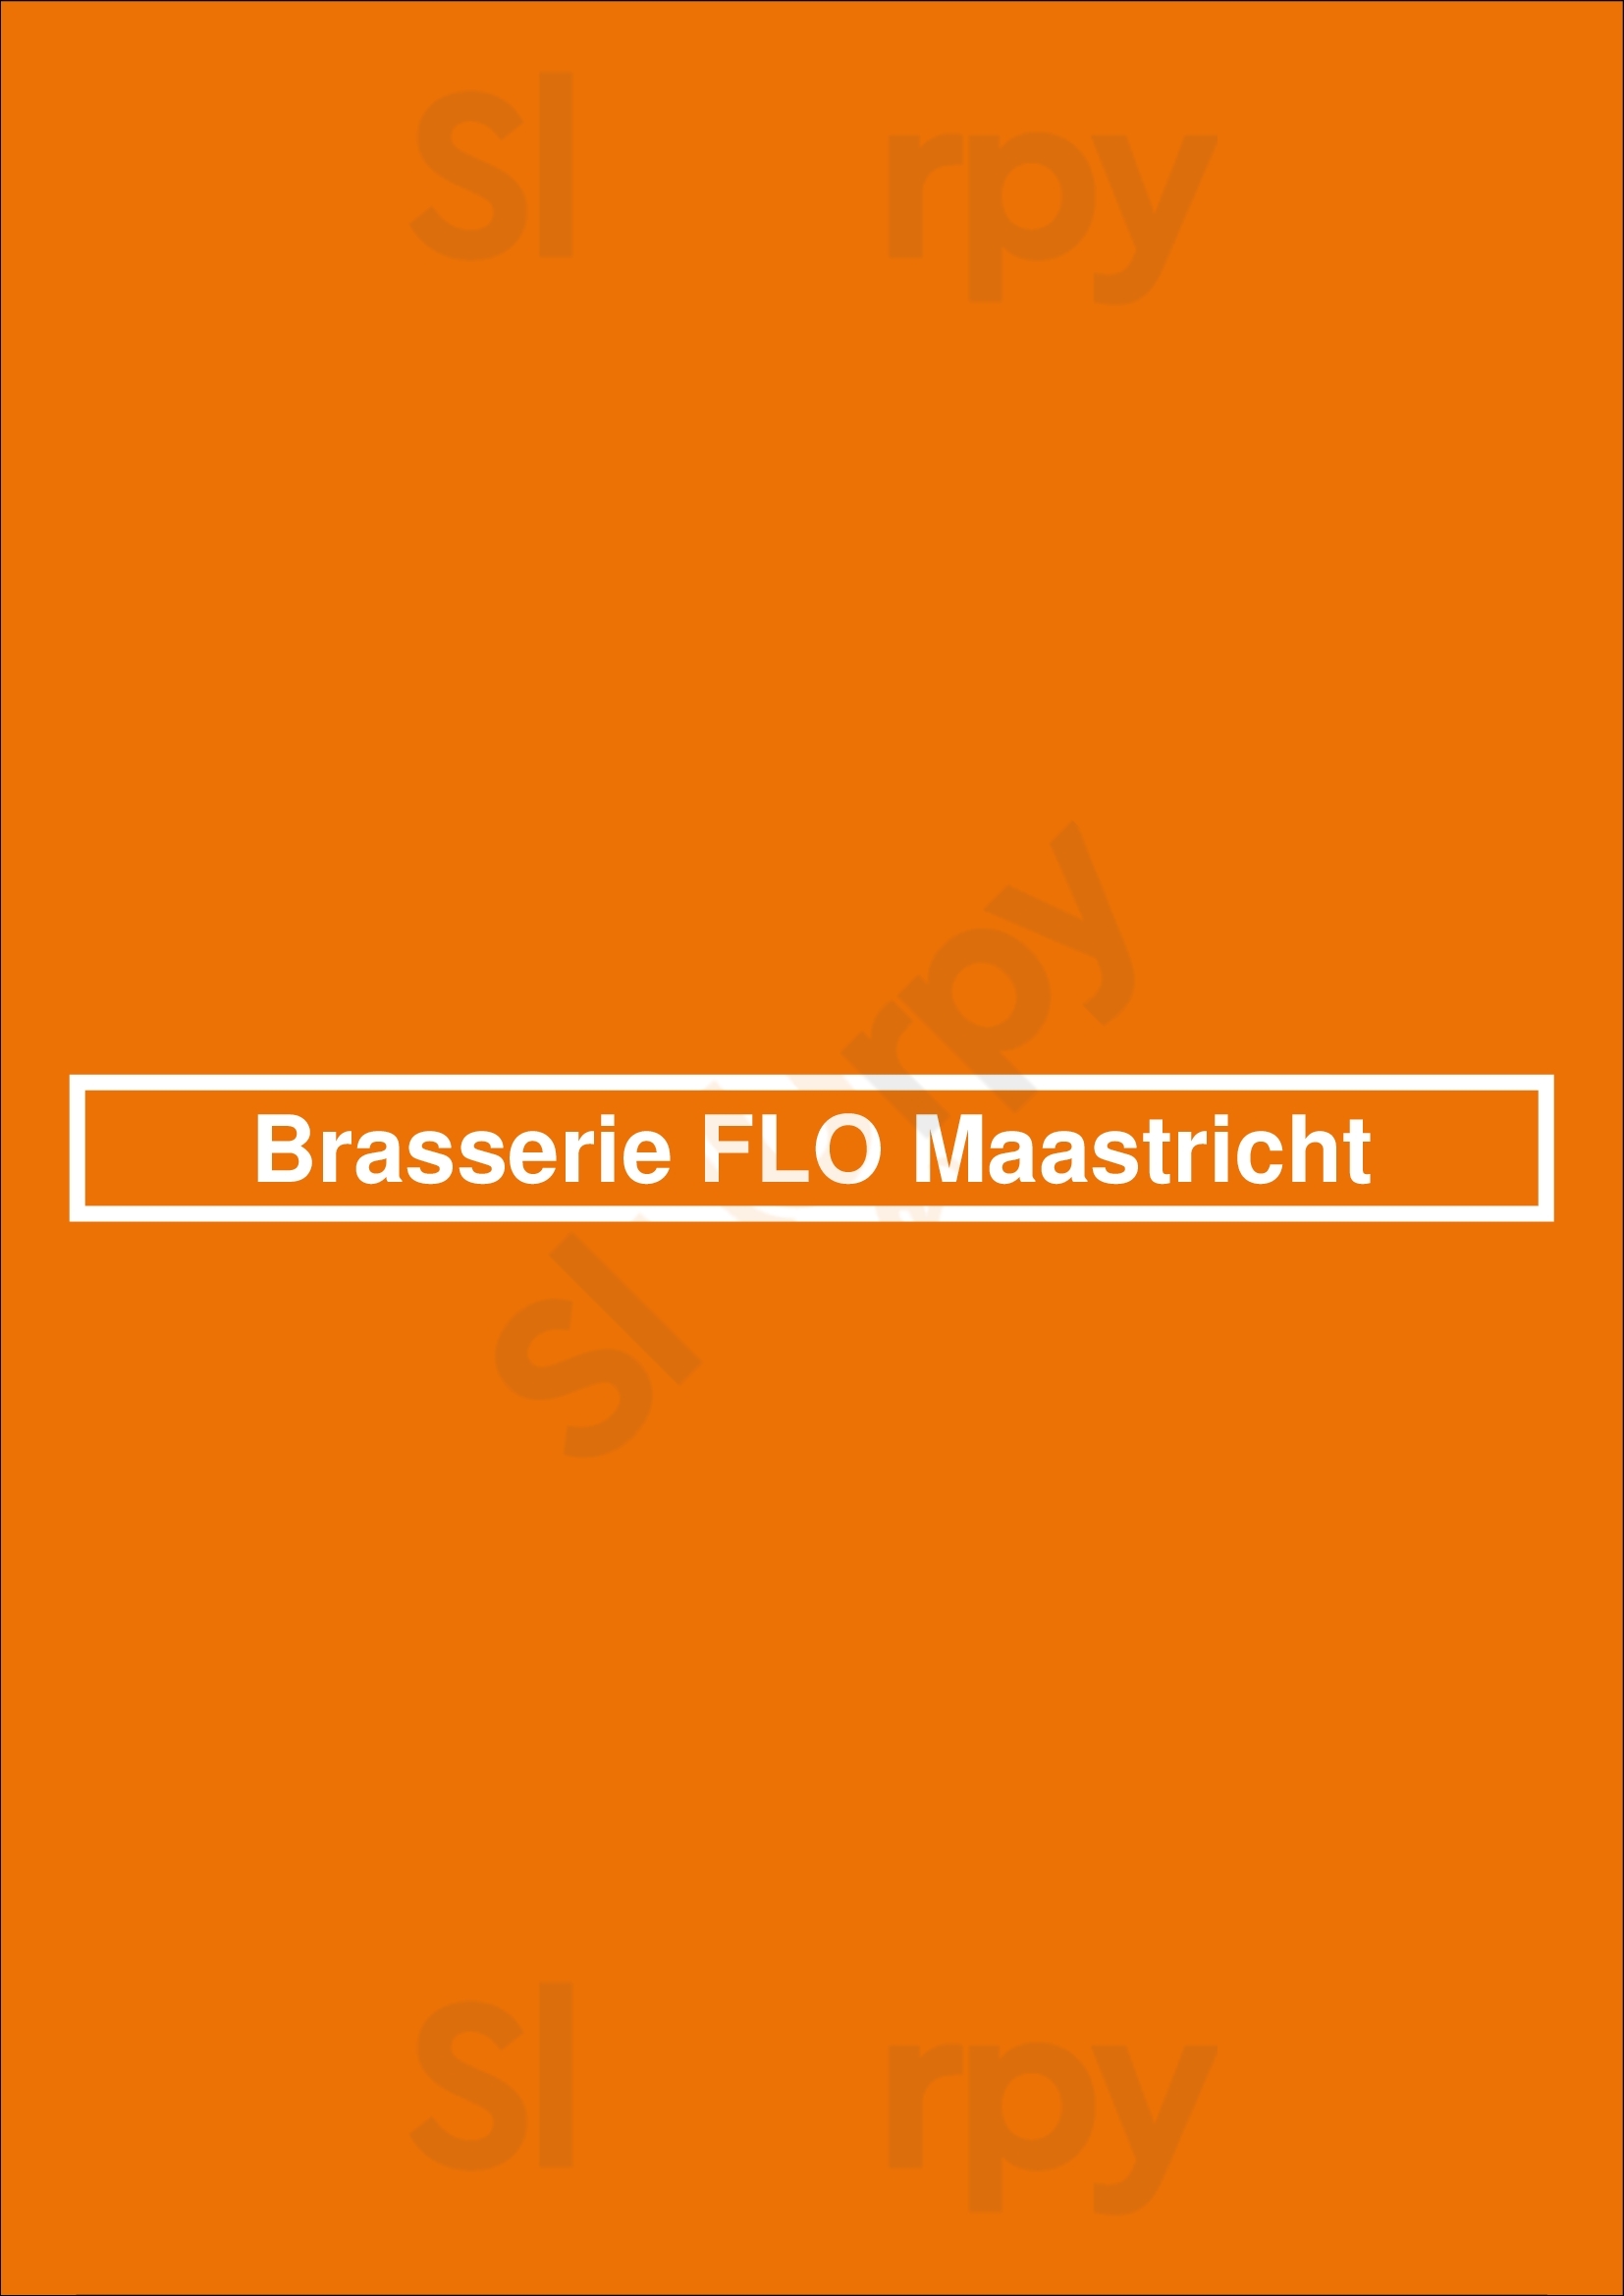 Brasserie Flo Maastricht Maastricht Menu - 1